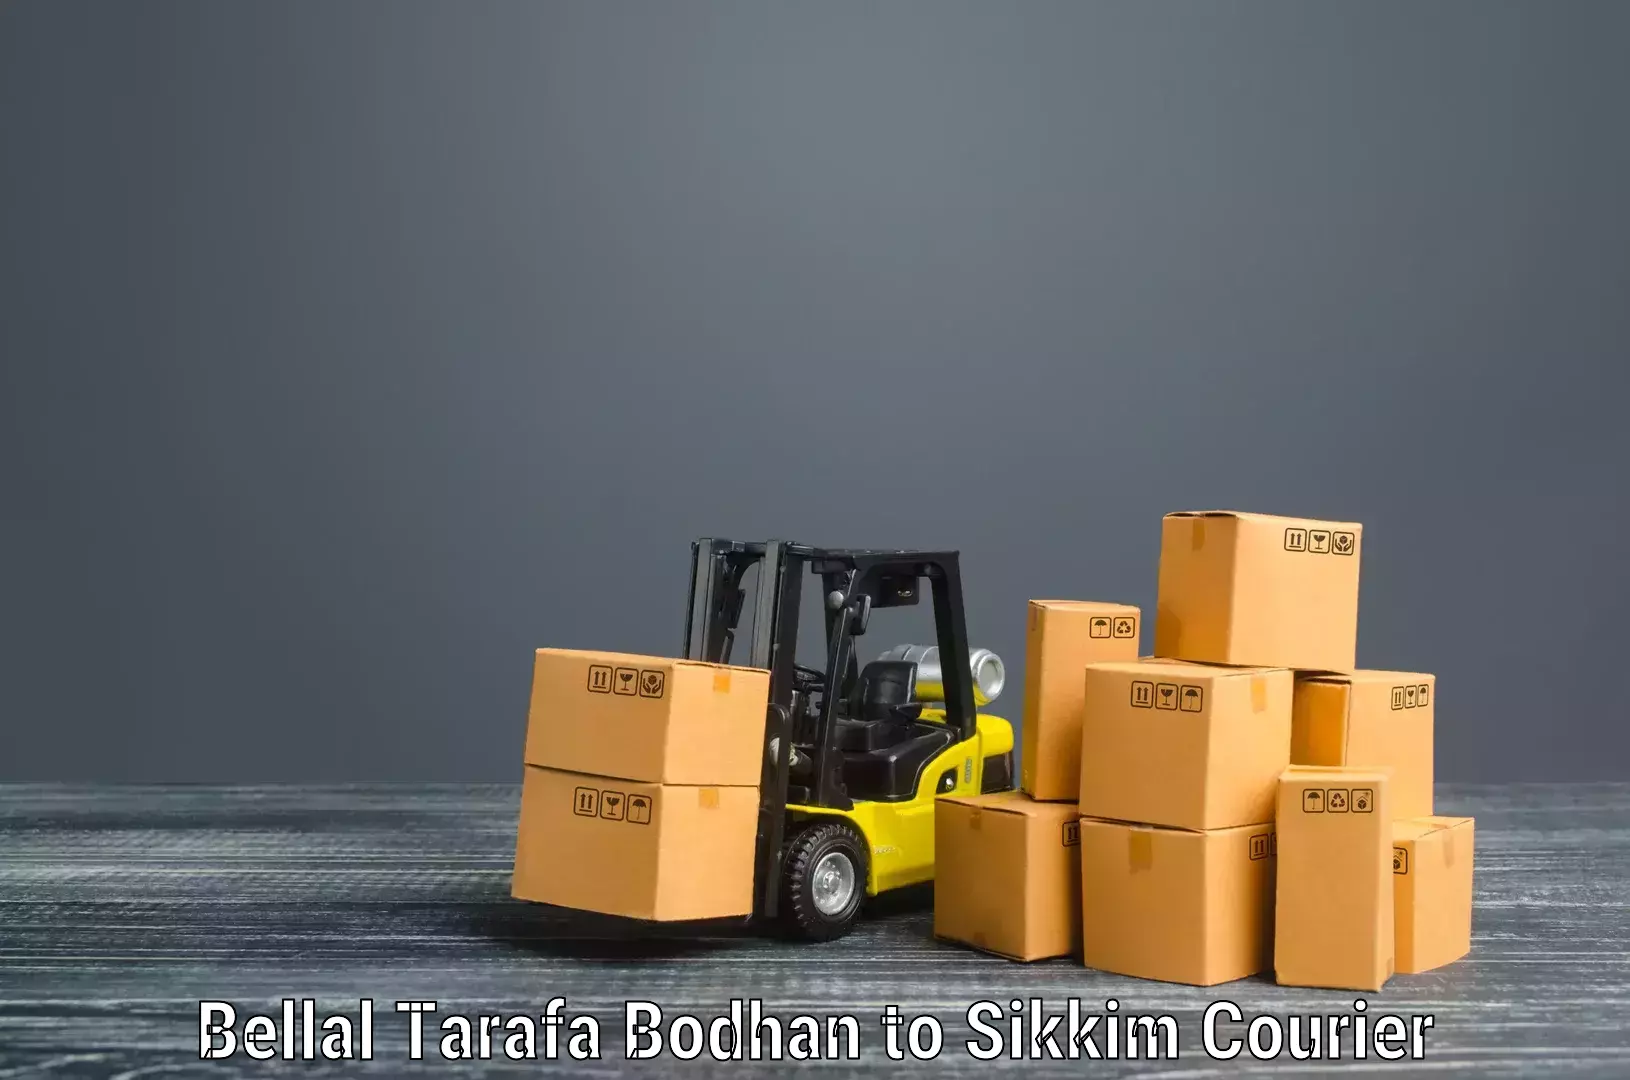 Professional packing and transport Bellal Tarafa Bodhan to Mangan